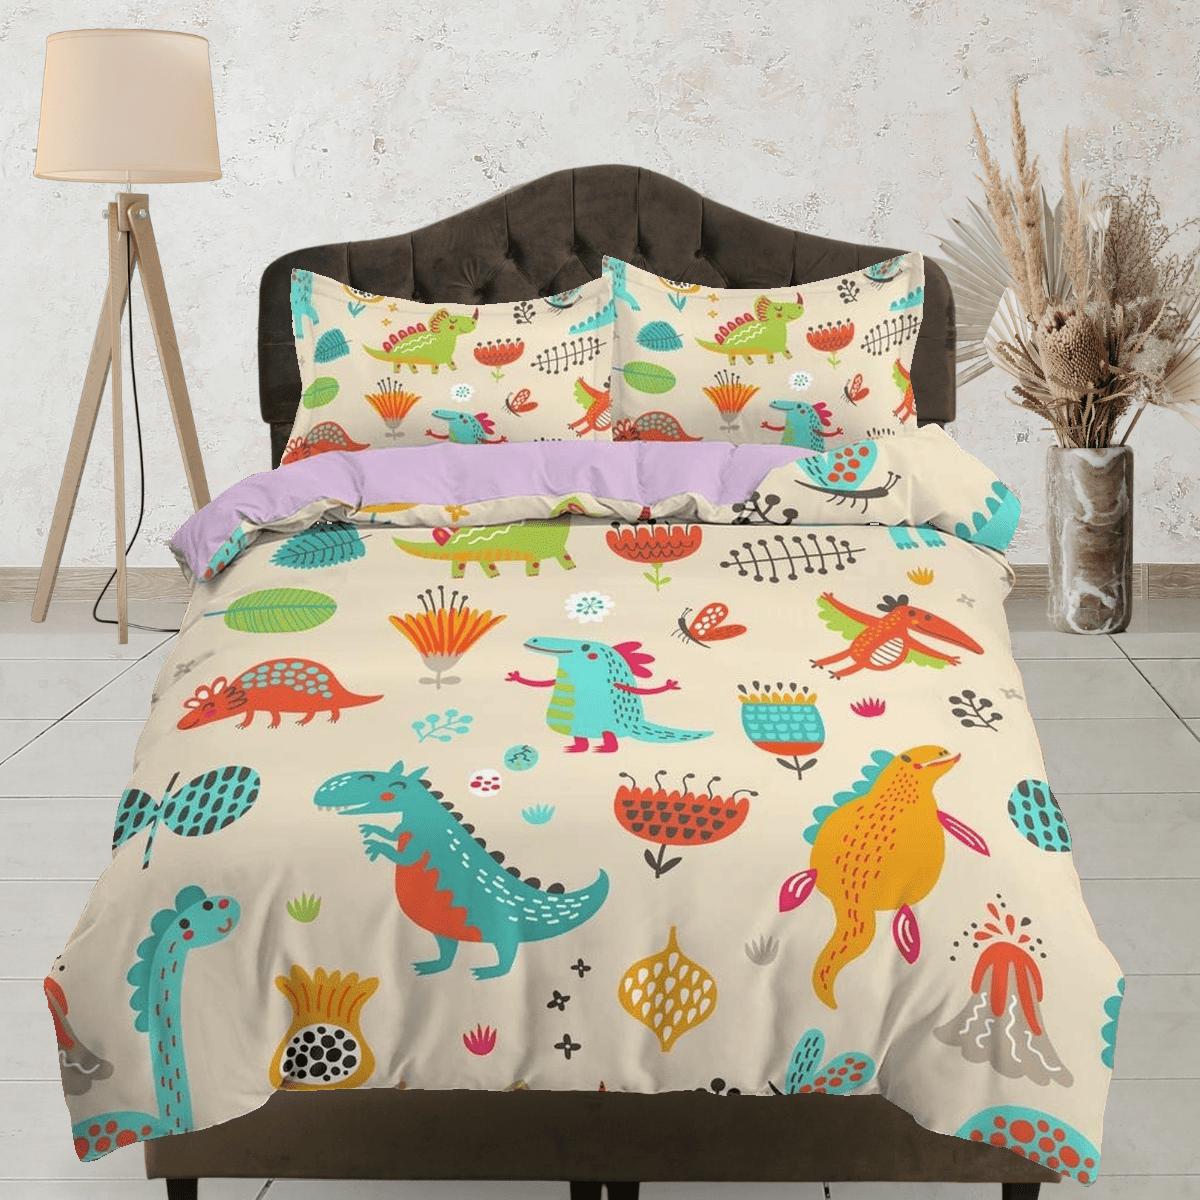 daintyduvet Beige dinosaur bedding, kids bedding full, cute duvet cover set, dinosaur nursery bed decor, colorful bedding, baby dinosaur, toddler